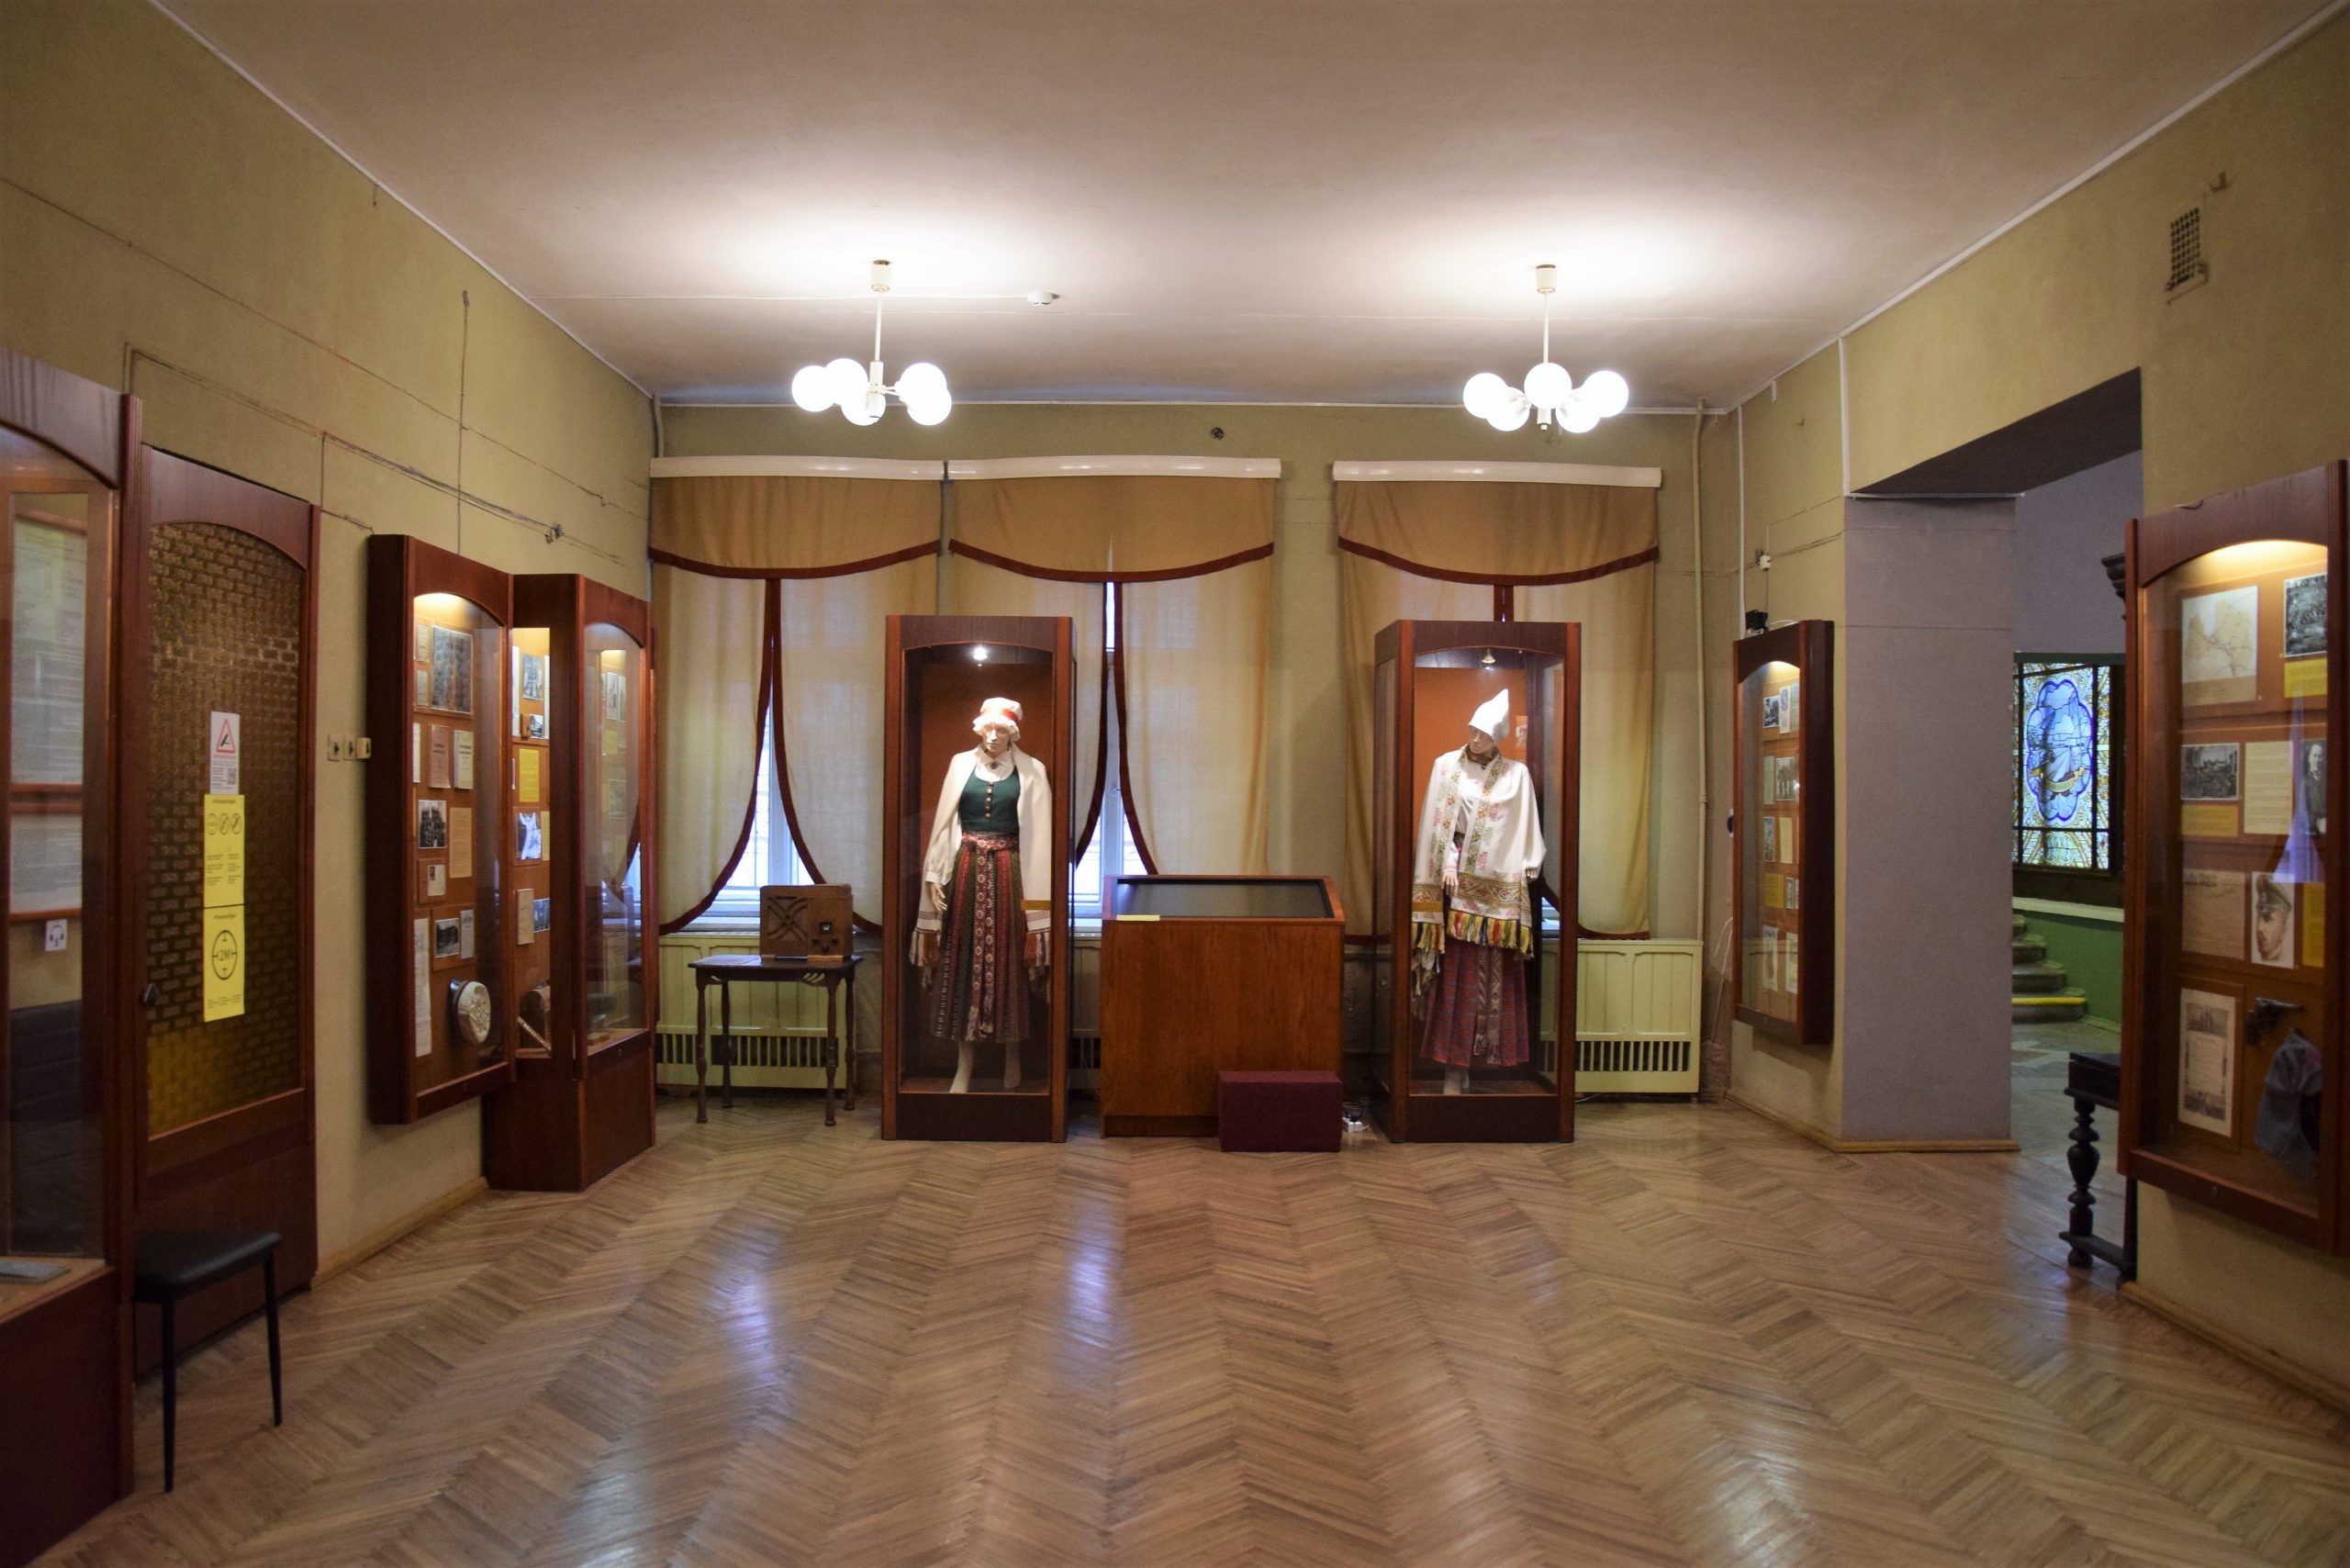 Daugavpils Regional Studies and Art Museum